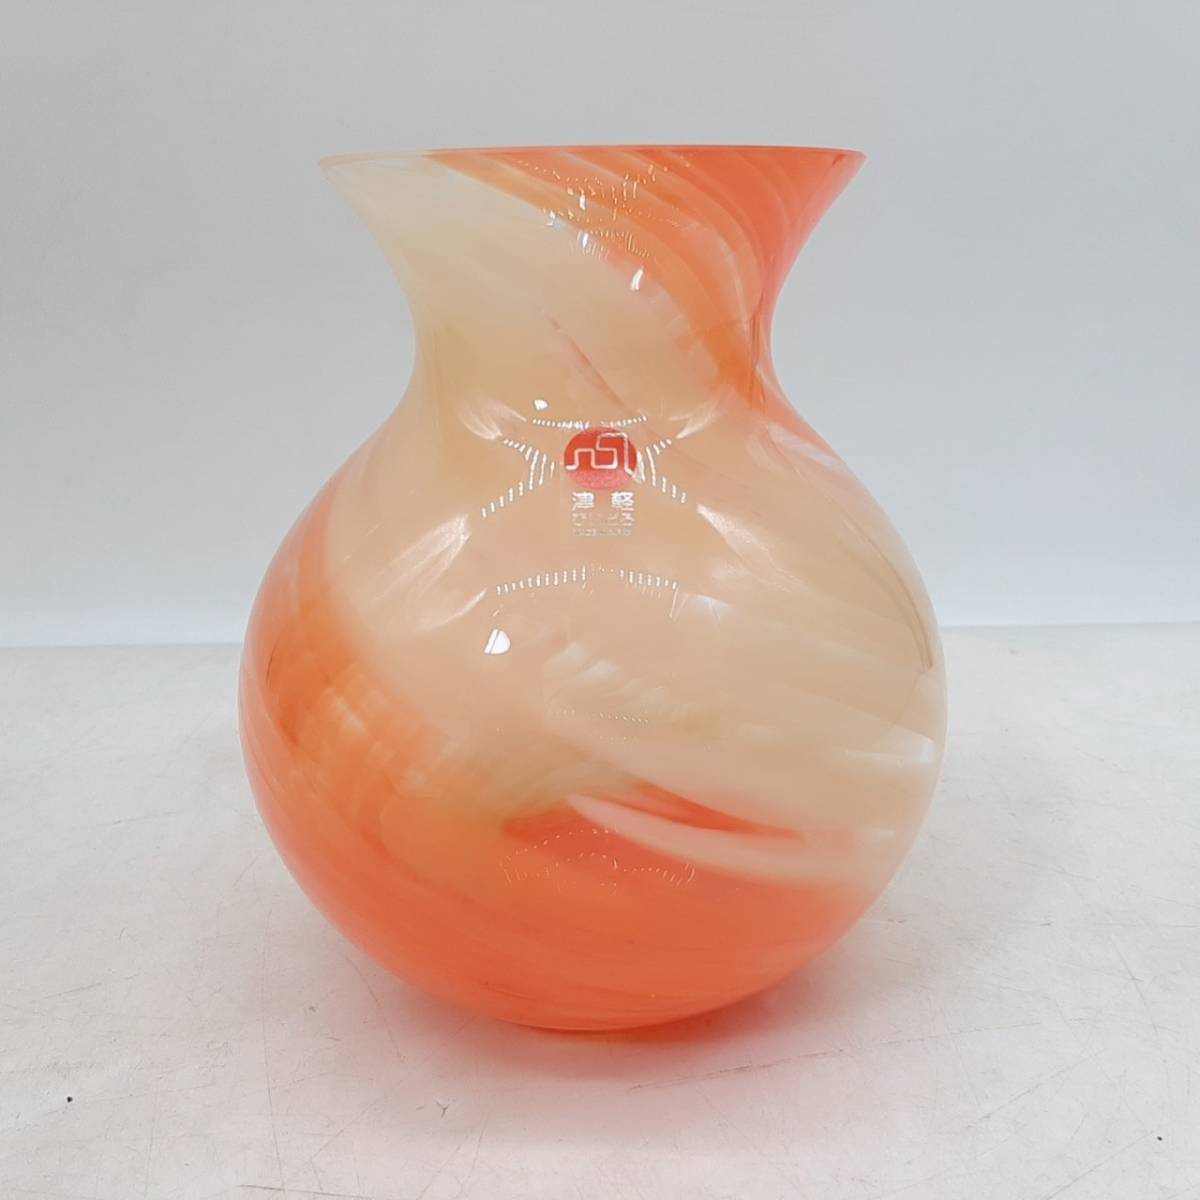 a261[1 иен старт ] Цу легкий .... ваза ваза для цветов стекло умение высота примерно 14cm orange 